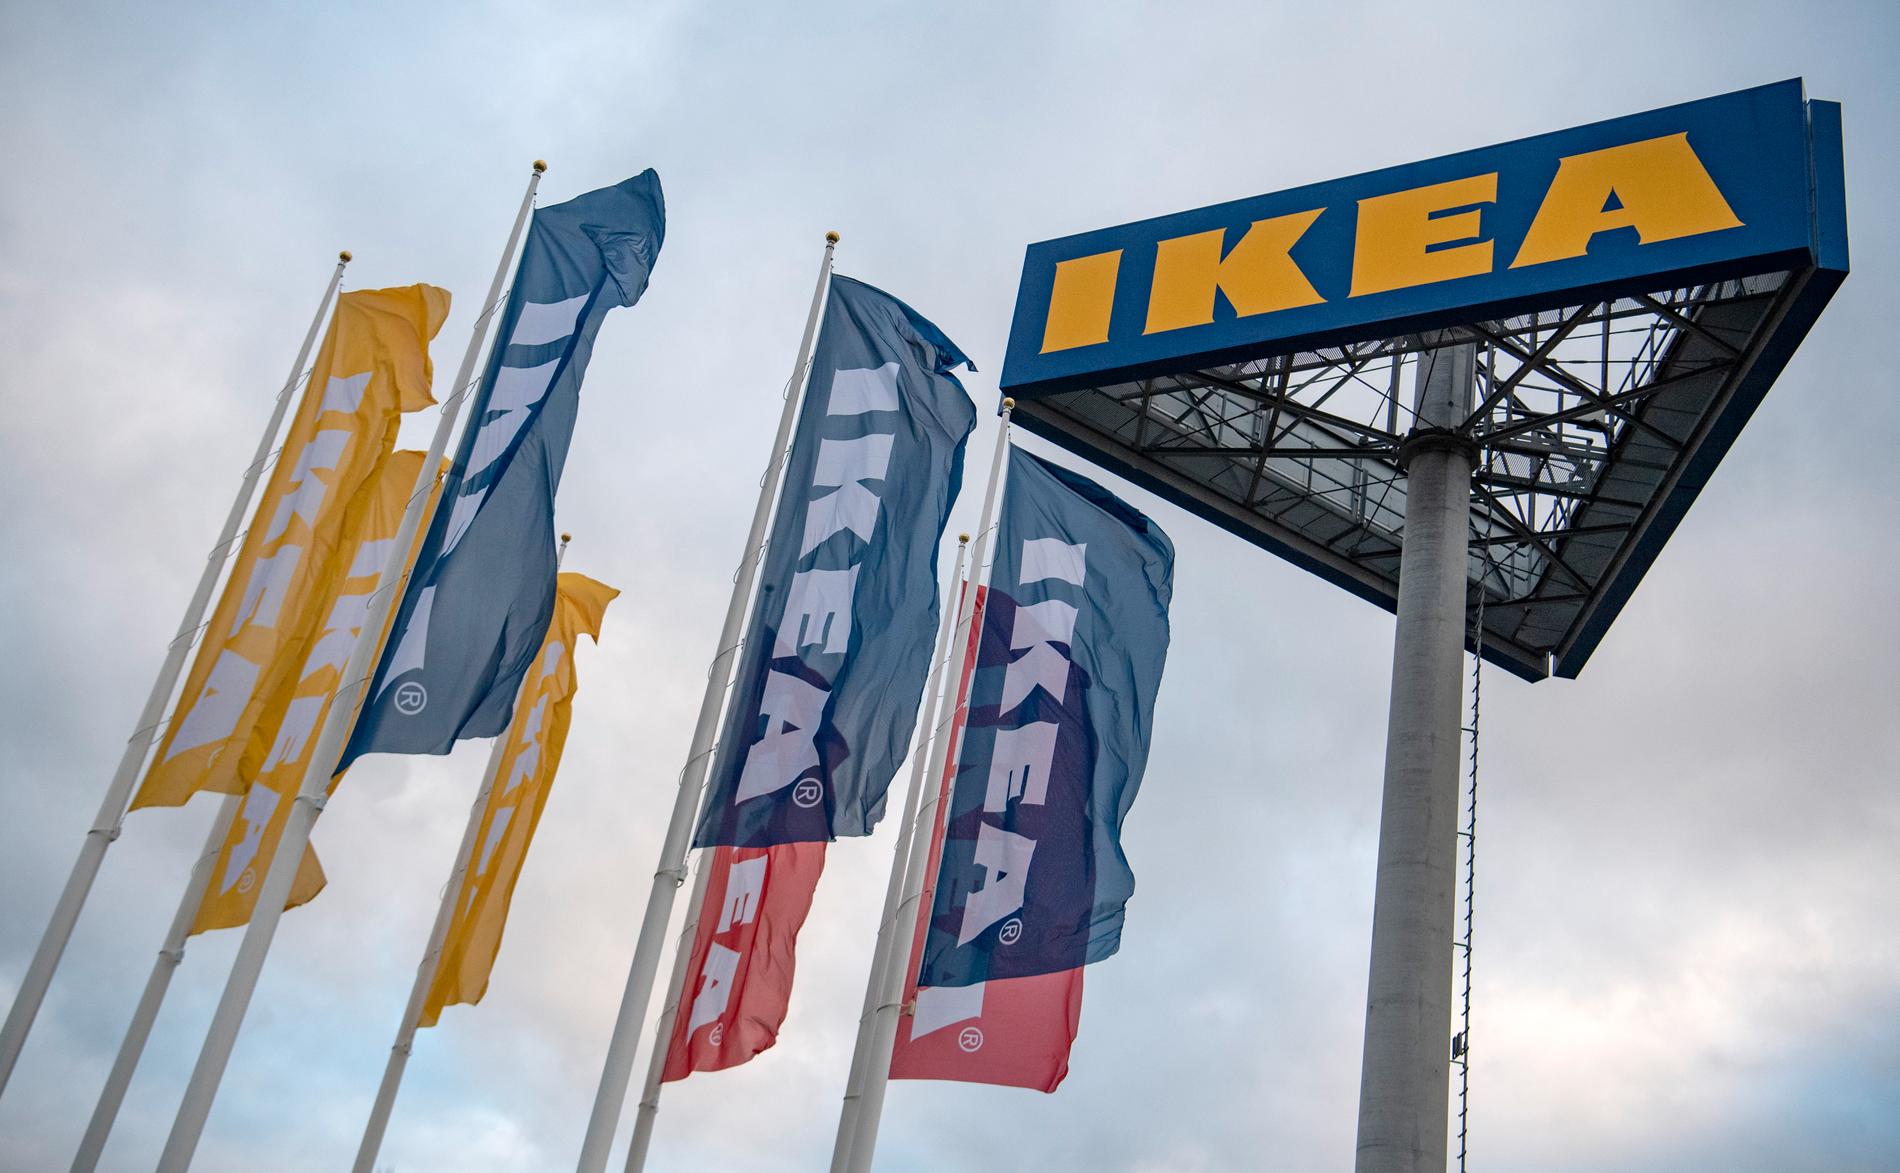 Ikeas varuhus i Malmö blir ett av två testvaruhus i världen där nya idéer kring framtidens varuhus ska prövas. Arkivbild.